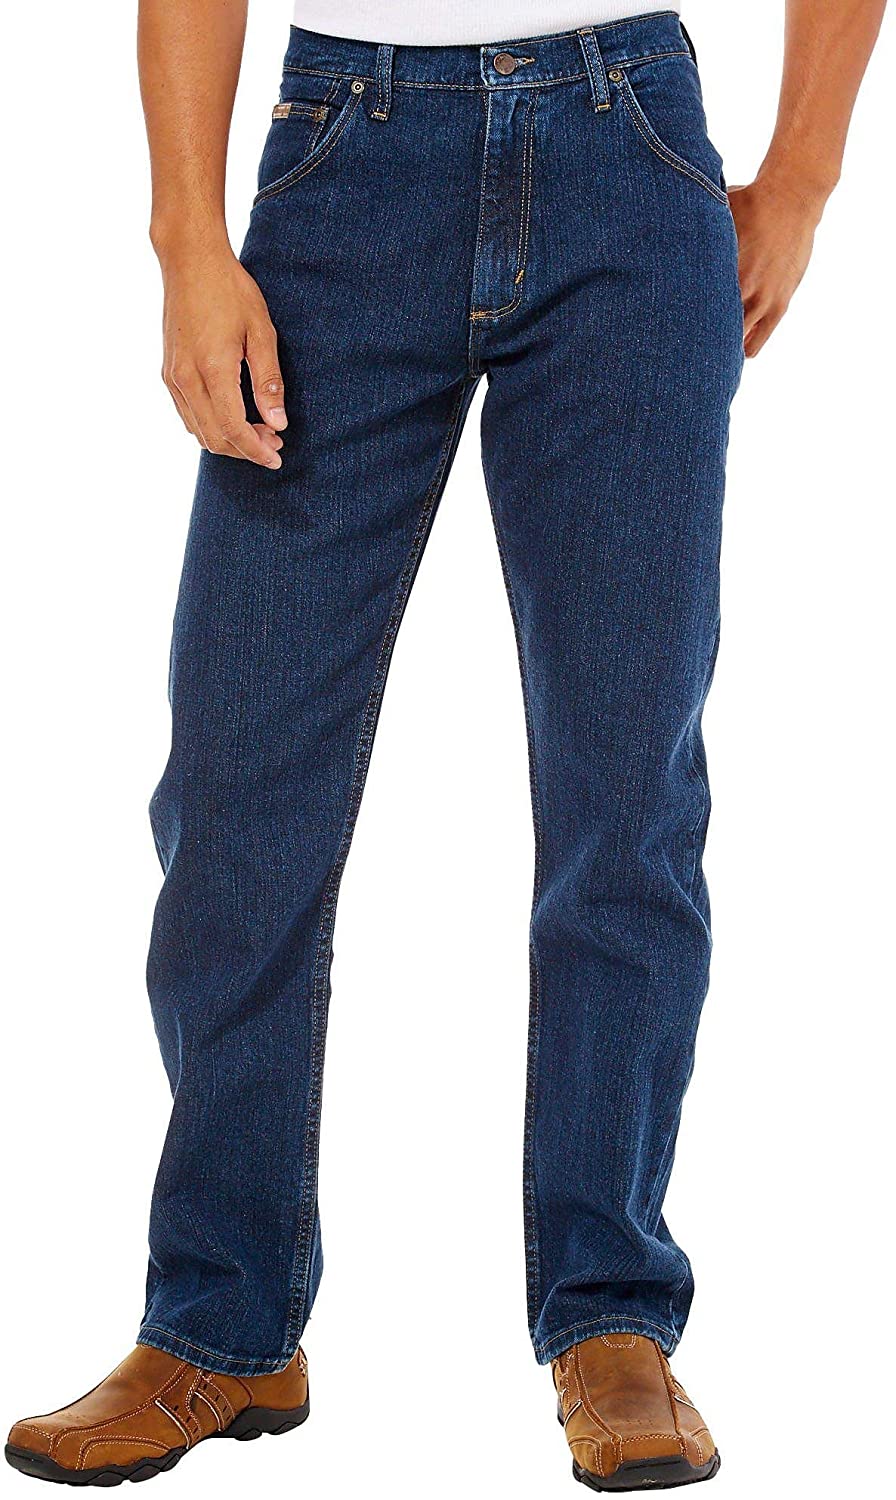 Wrangler Genuine Men's Regular Fit Jeans | eBay